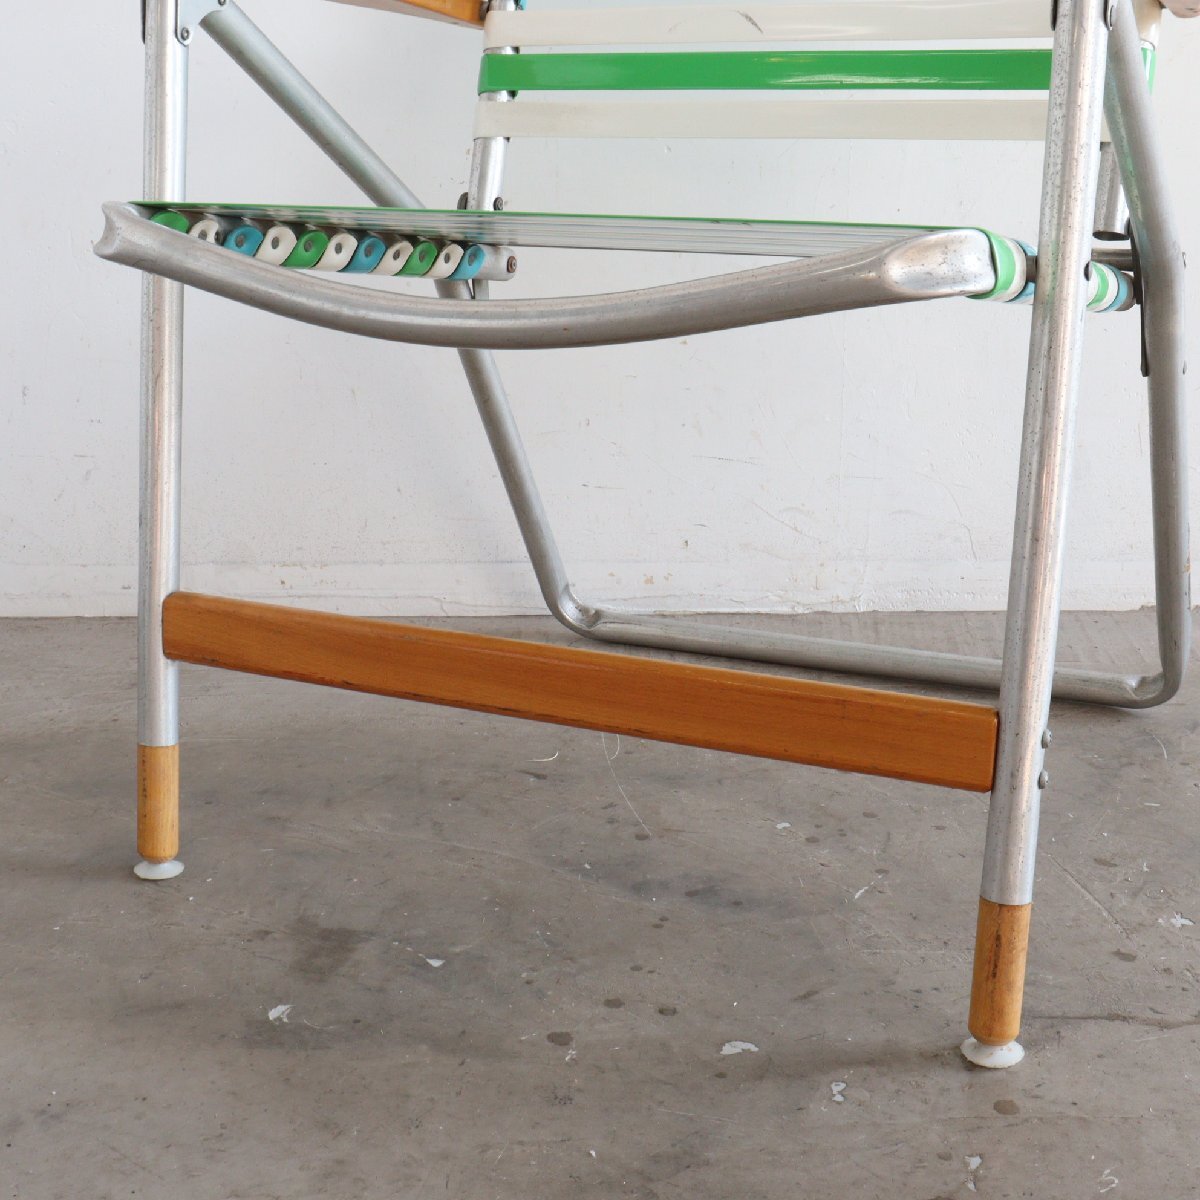 1960s-70s アメリカ ヴィンテージ ビーチチェア ローンチェア / 折り畳み フォールディング アウトドア キャンプ USA 椅子 #602-30-101-97_画像6